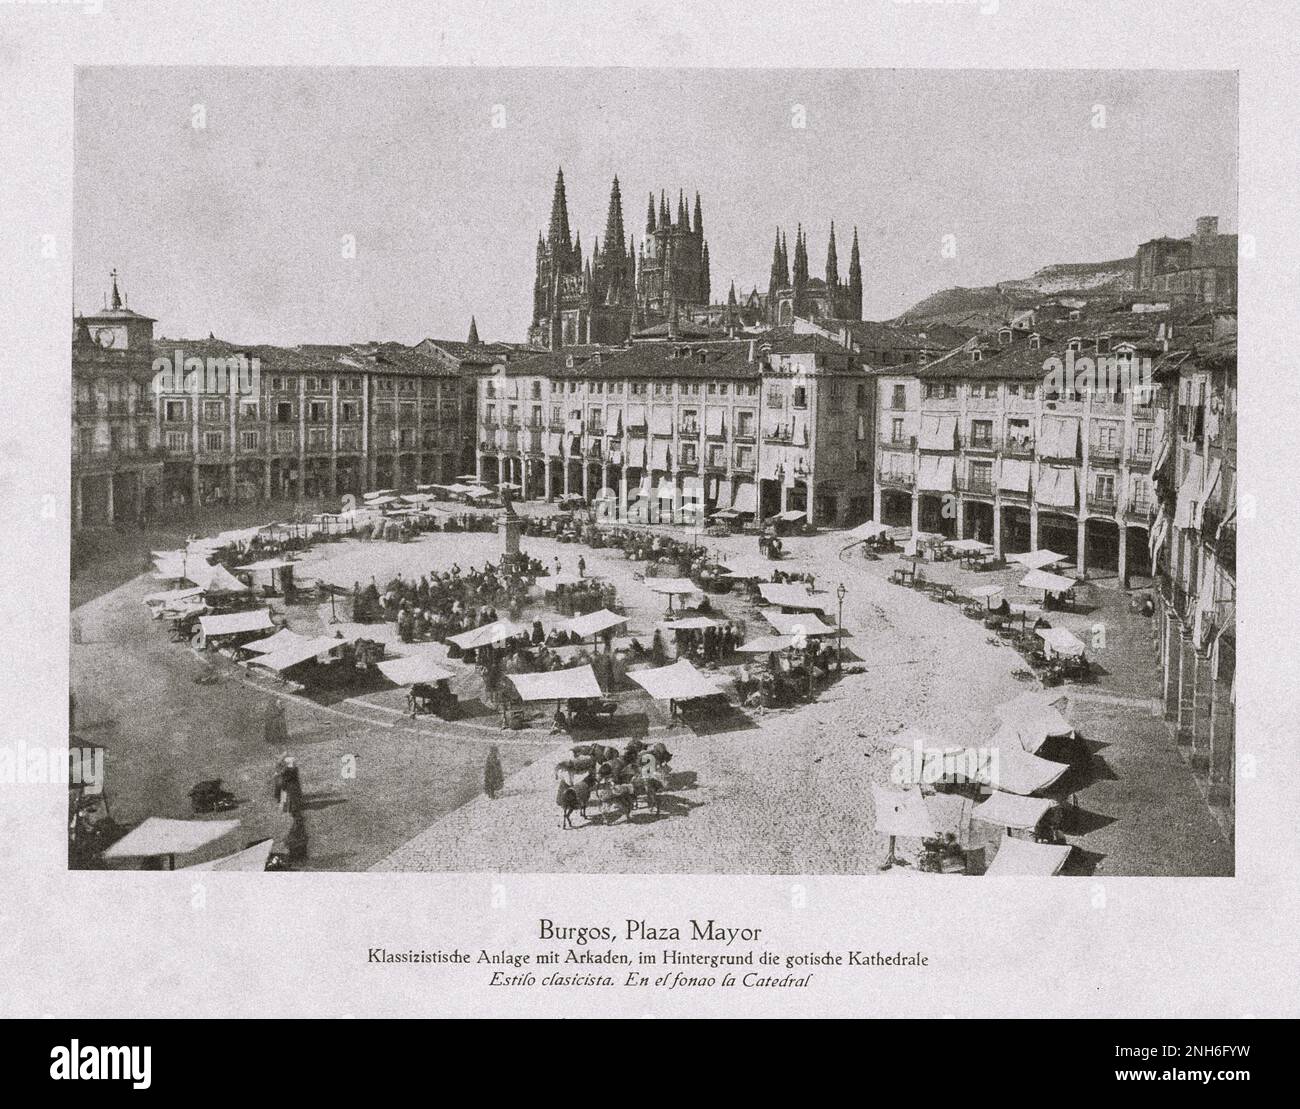 Architektur des alten Spaniens. Vintage-Foto von Plaza Mayor, Burgas. Сlassic-Komplex mit Arkaden, im Hintergrund die gotische Kathedrale. Stockfoto